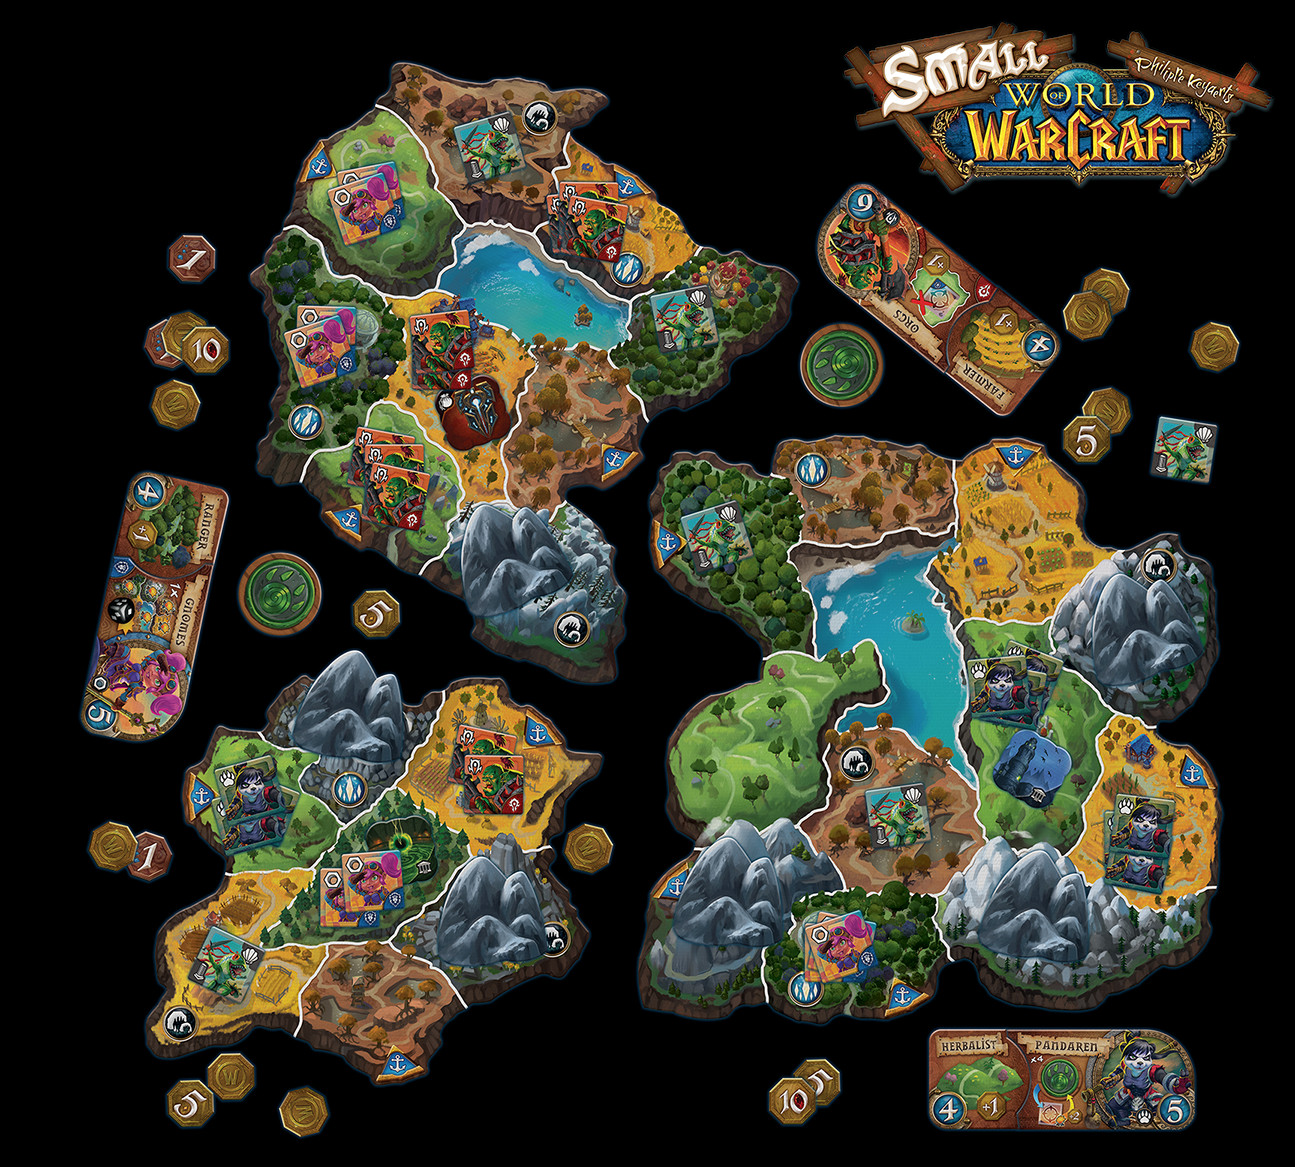 Маленький мир. Small World of Warcraft настольная игра. Маленький мир варкрафт настольная игра. Small World Warcraft карта. Настольная игра Days of Wonder small World of Warcraft.